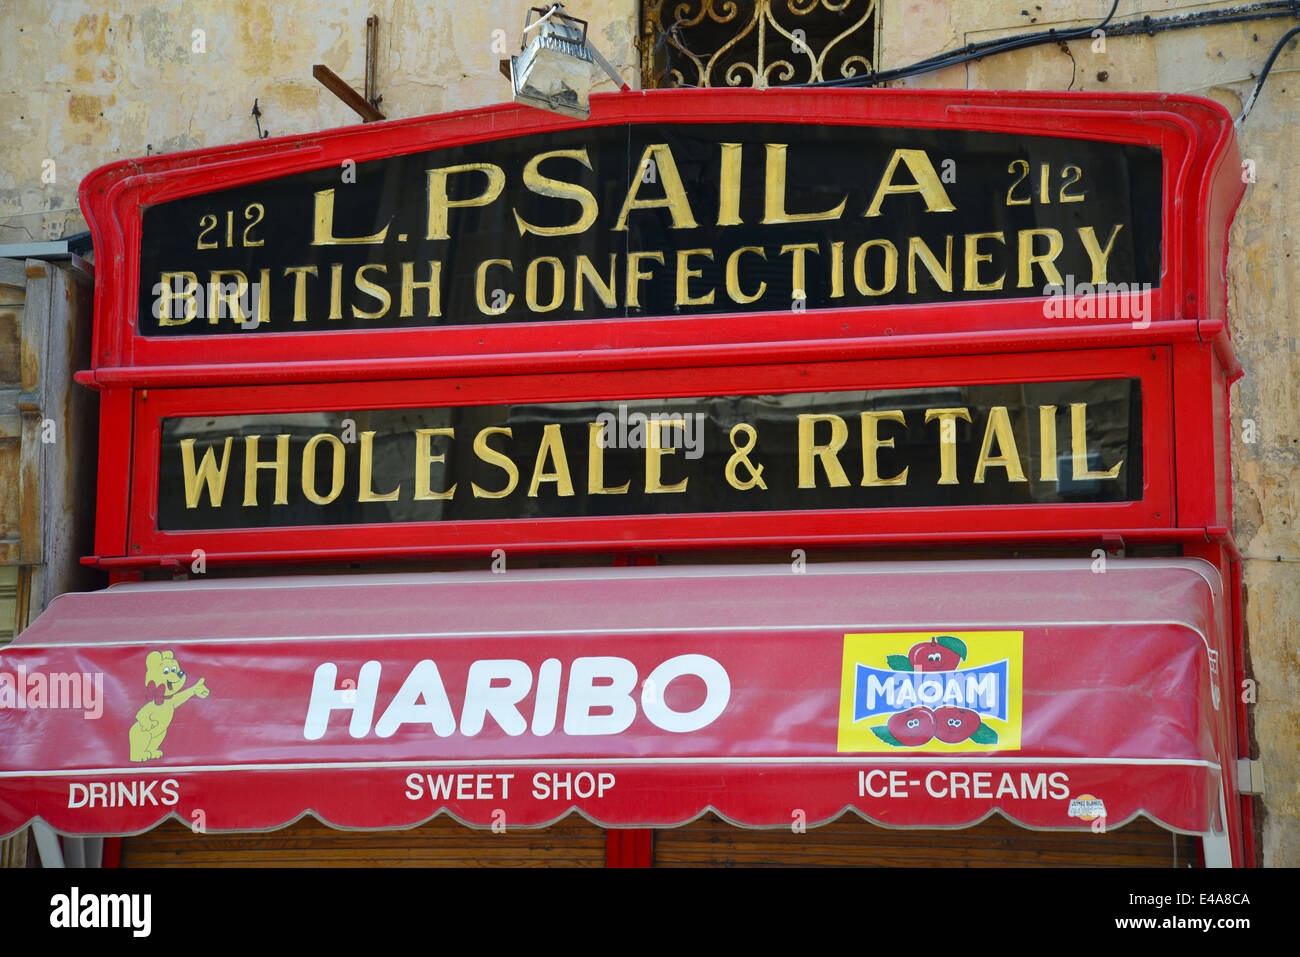 Signe classique à l'extérieur de confiserie, La Valette (Il-Belt La Valette), quartier du port du Sud, Malte, Malte Région Xlokk Banque D'Images